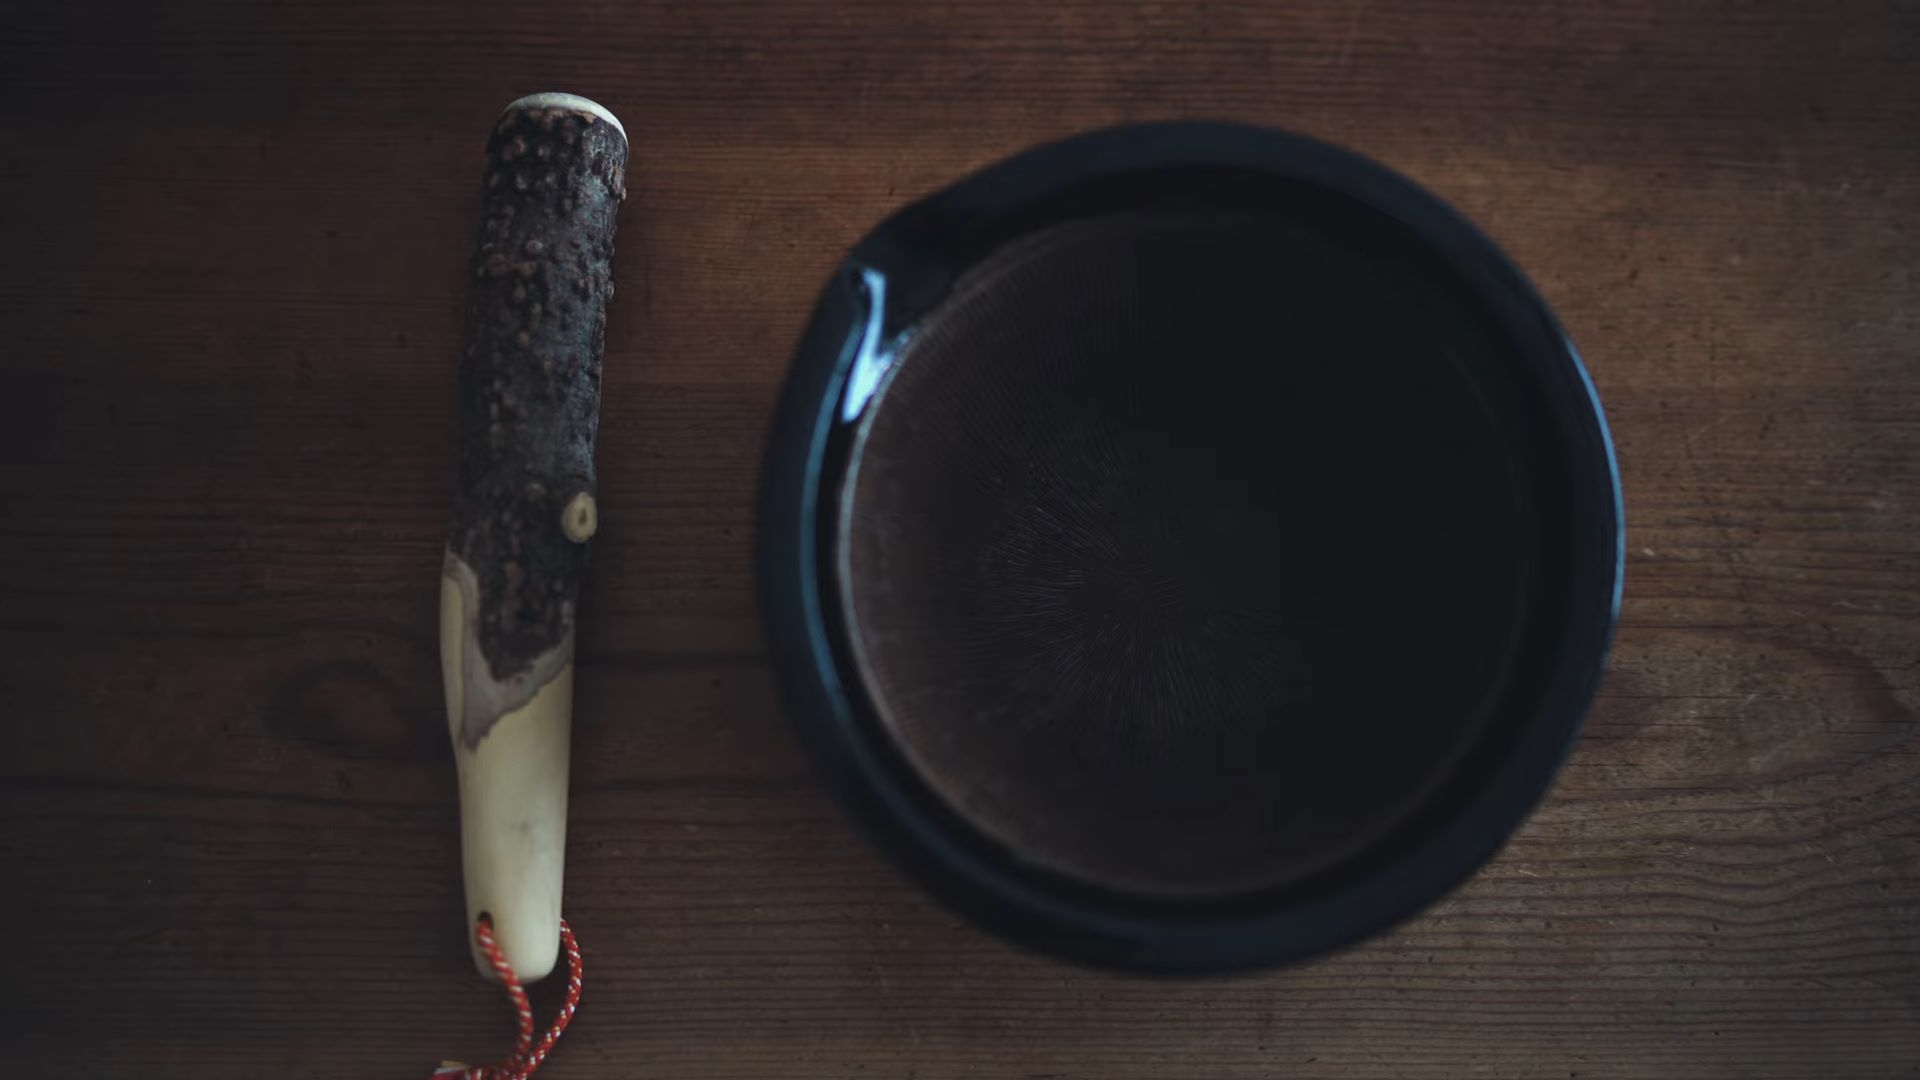 La pareja formada por el suribachi y el surikogi, un mortero y una mano de mortero respectivamente, es vital para la preparación de pastas y salsas japonesas. El interior estriado del suribachi es ideal para triturar semillas de sésamo, especias y otros ingredientes, liberando sus aceites y aromas esenciales. Esta técnica de triturado no solo maximiza el sabor sino que también preserva la textura deseada de los ingredientes, un testimonio de la atención al detalle en la cocina japonesa.